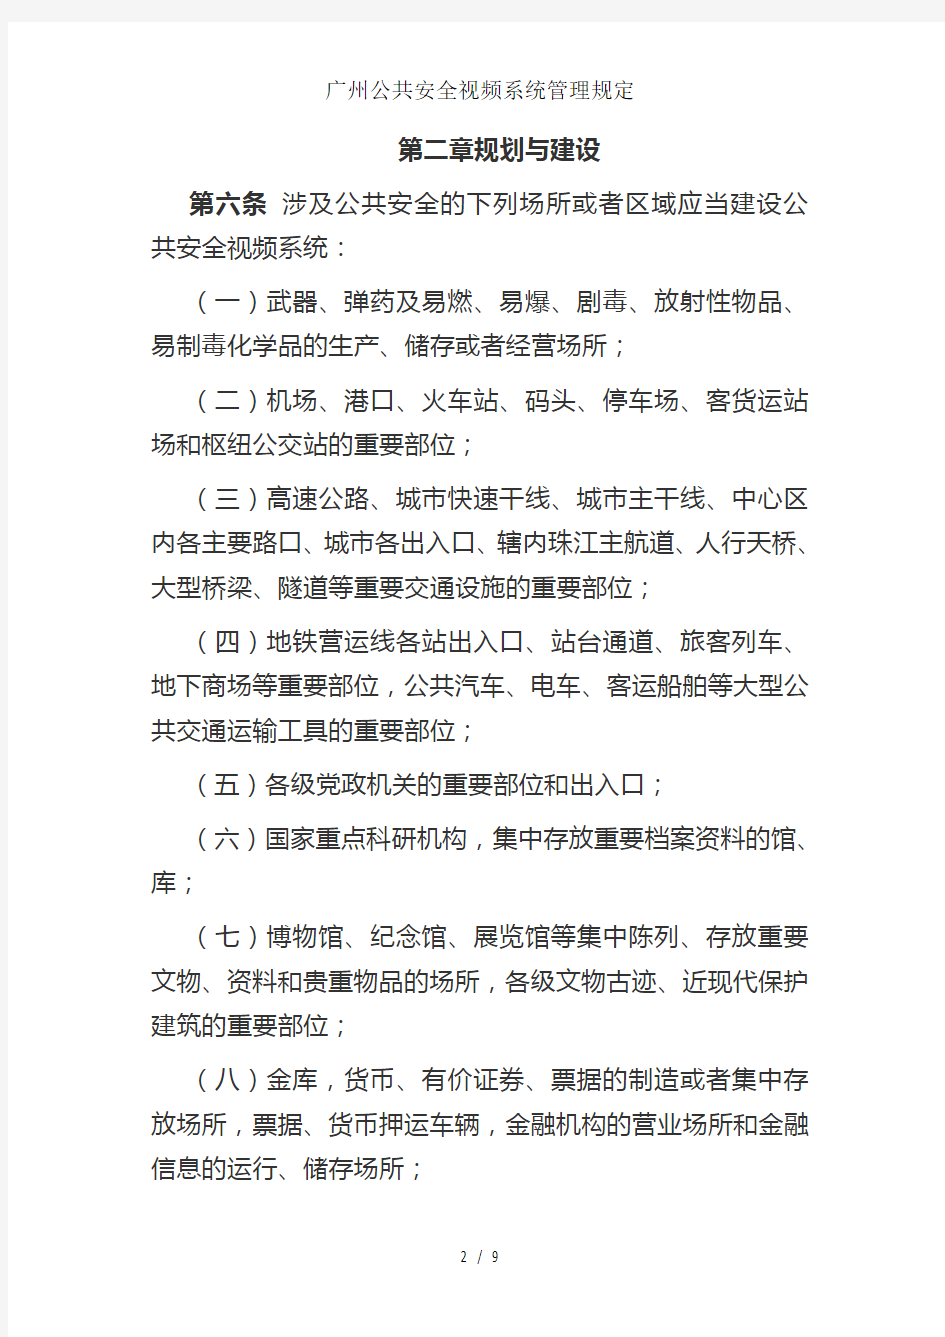 广州公共安全视频系统管理规定